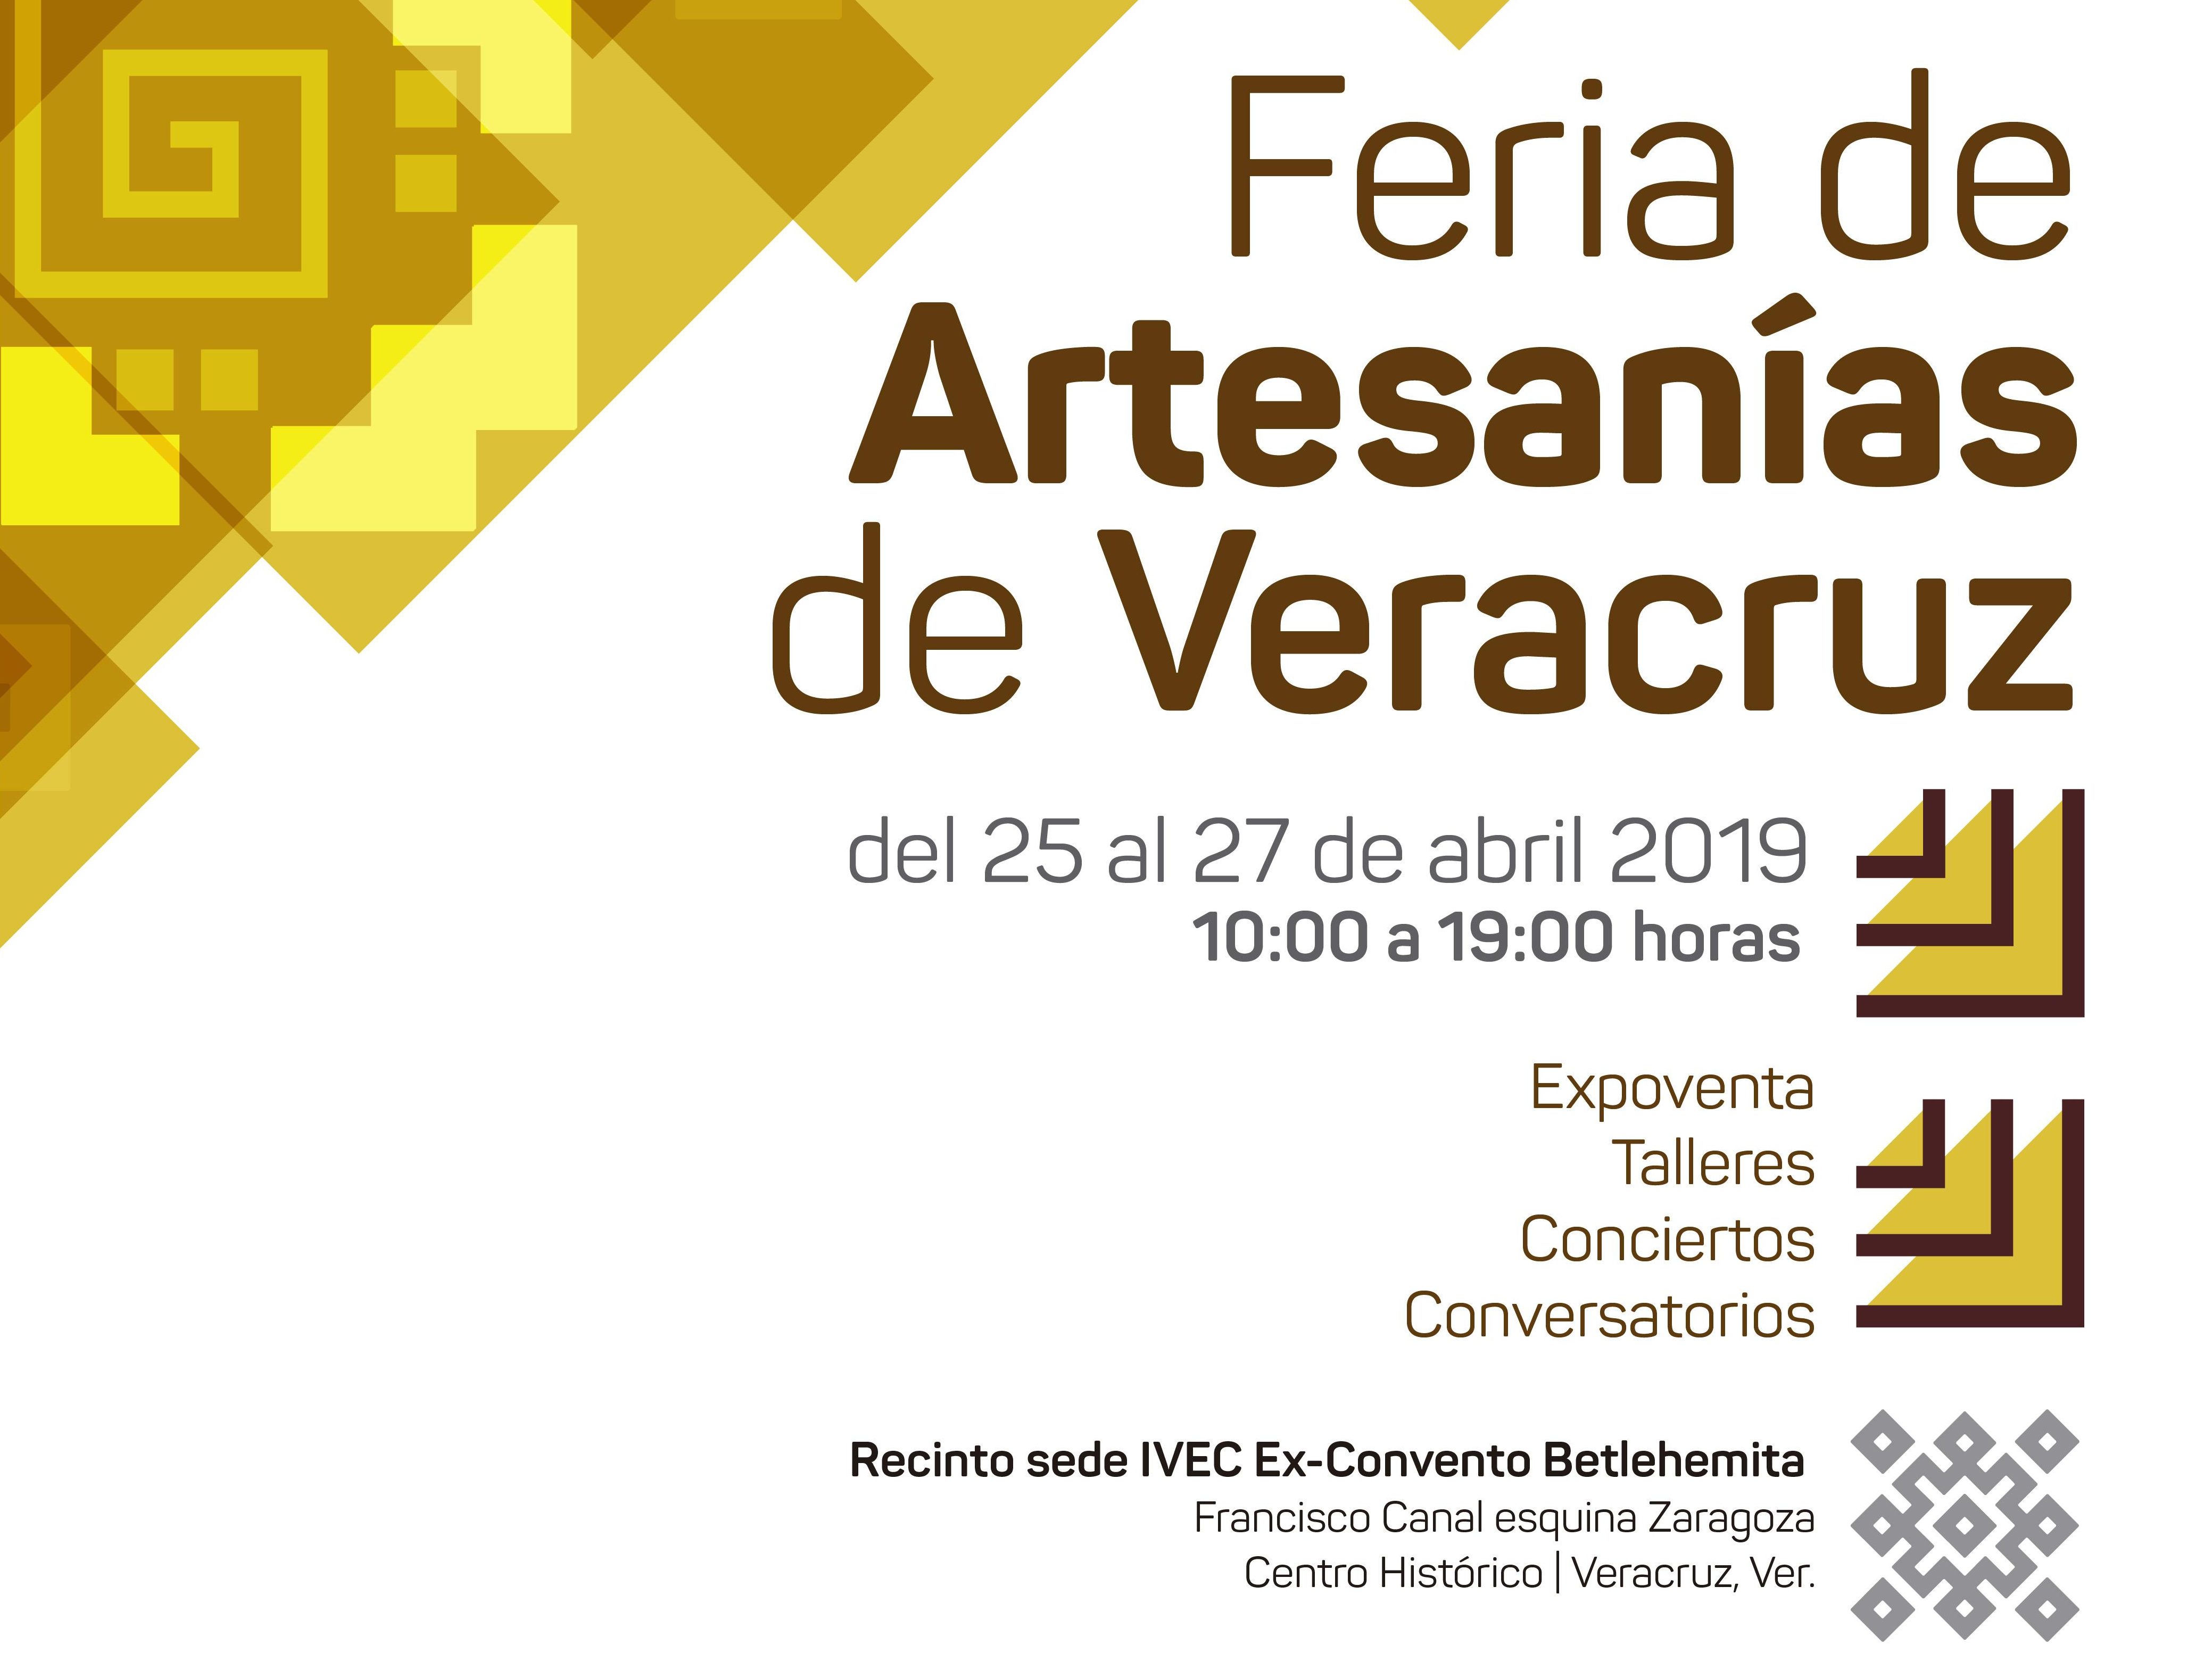 Feria de Artesanías de Veracruz del 25 al 27 de abril